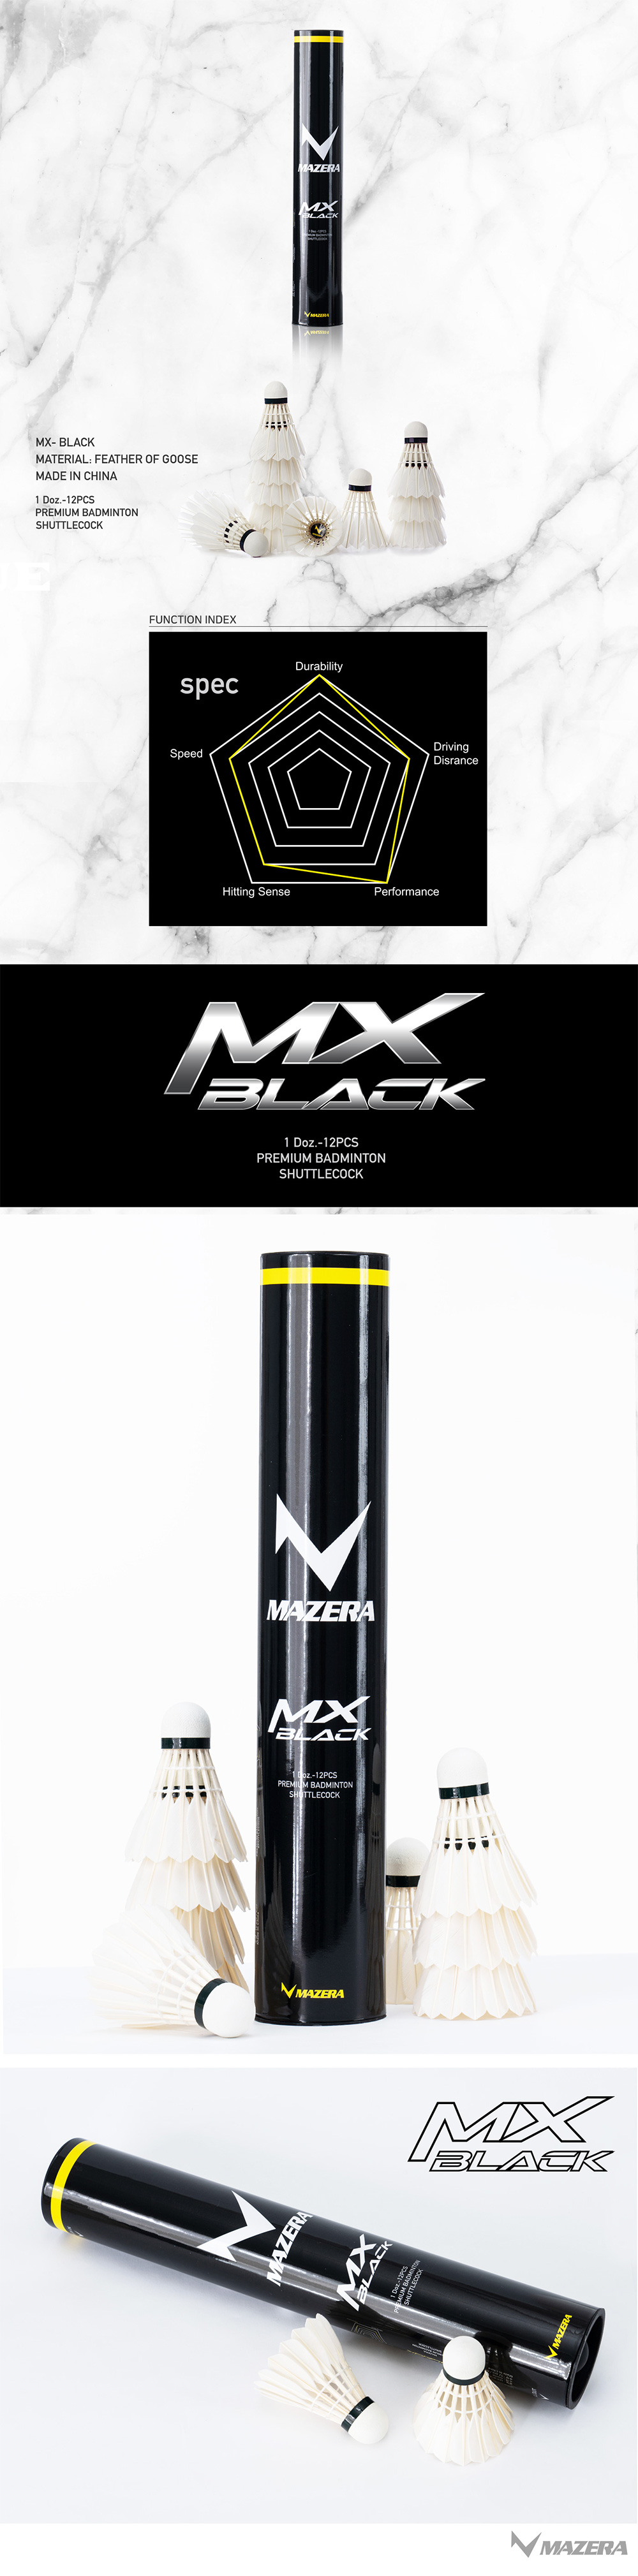 MX-블랙